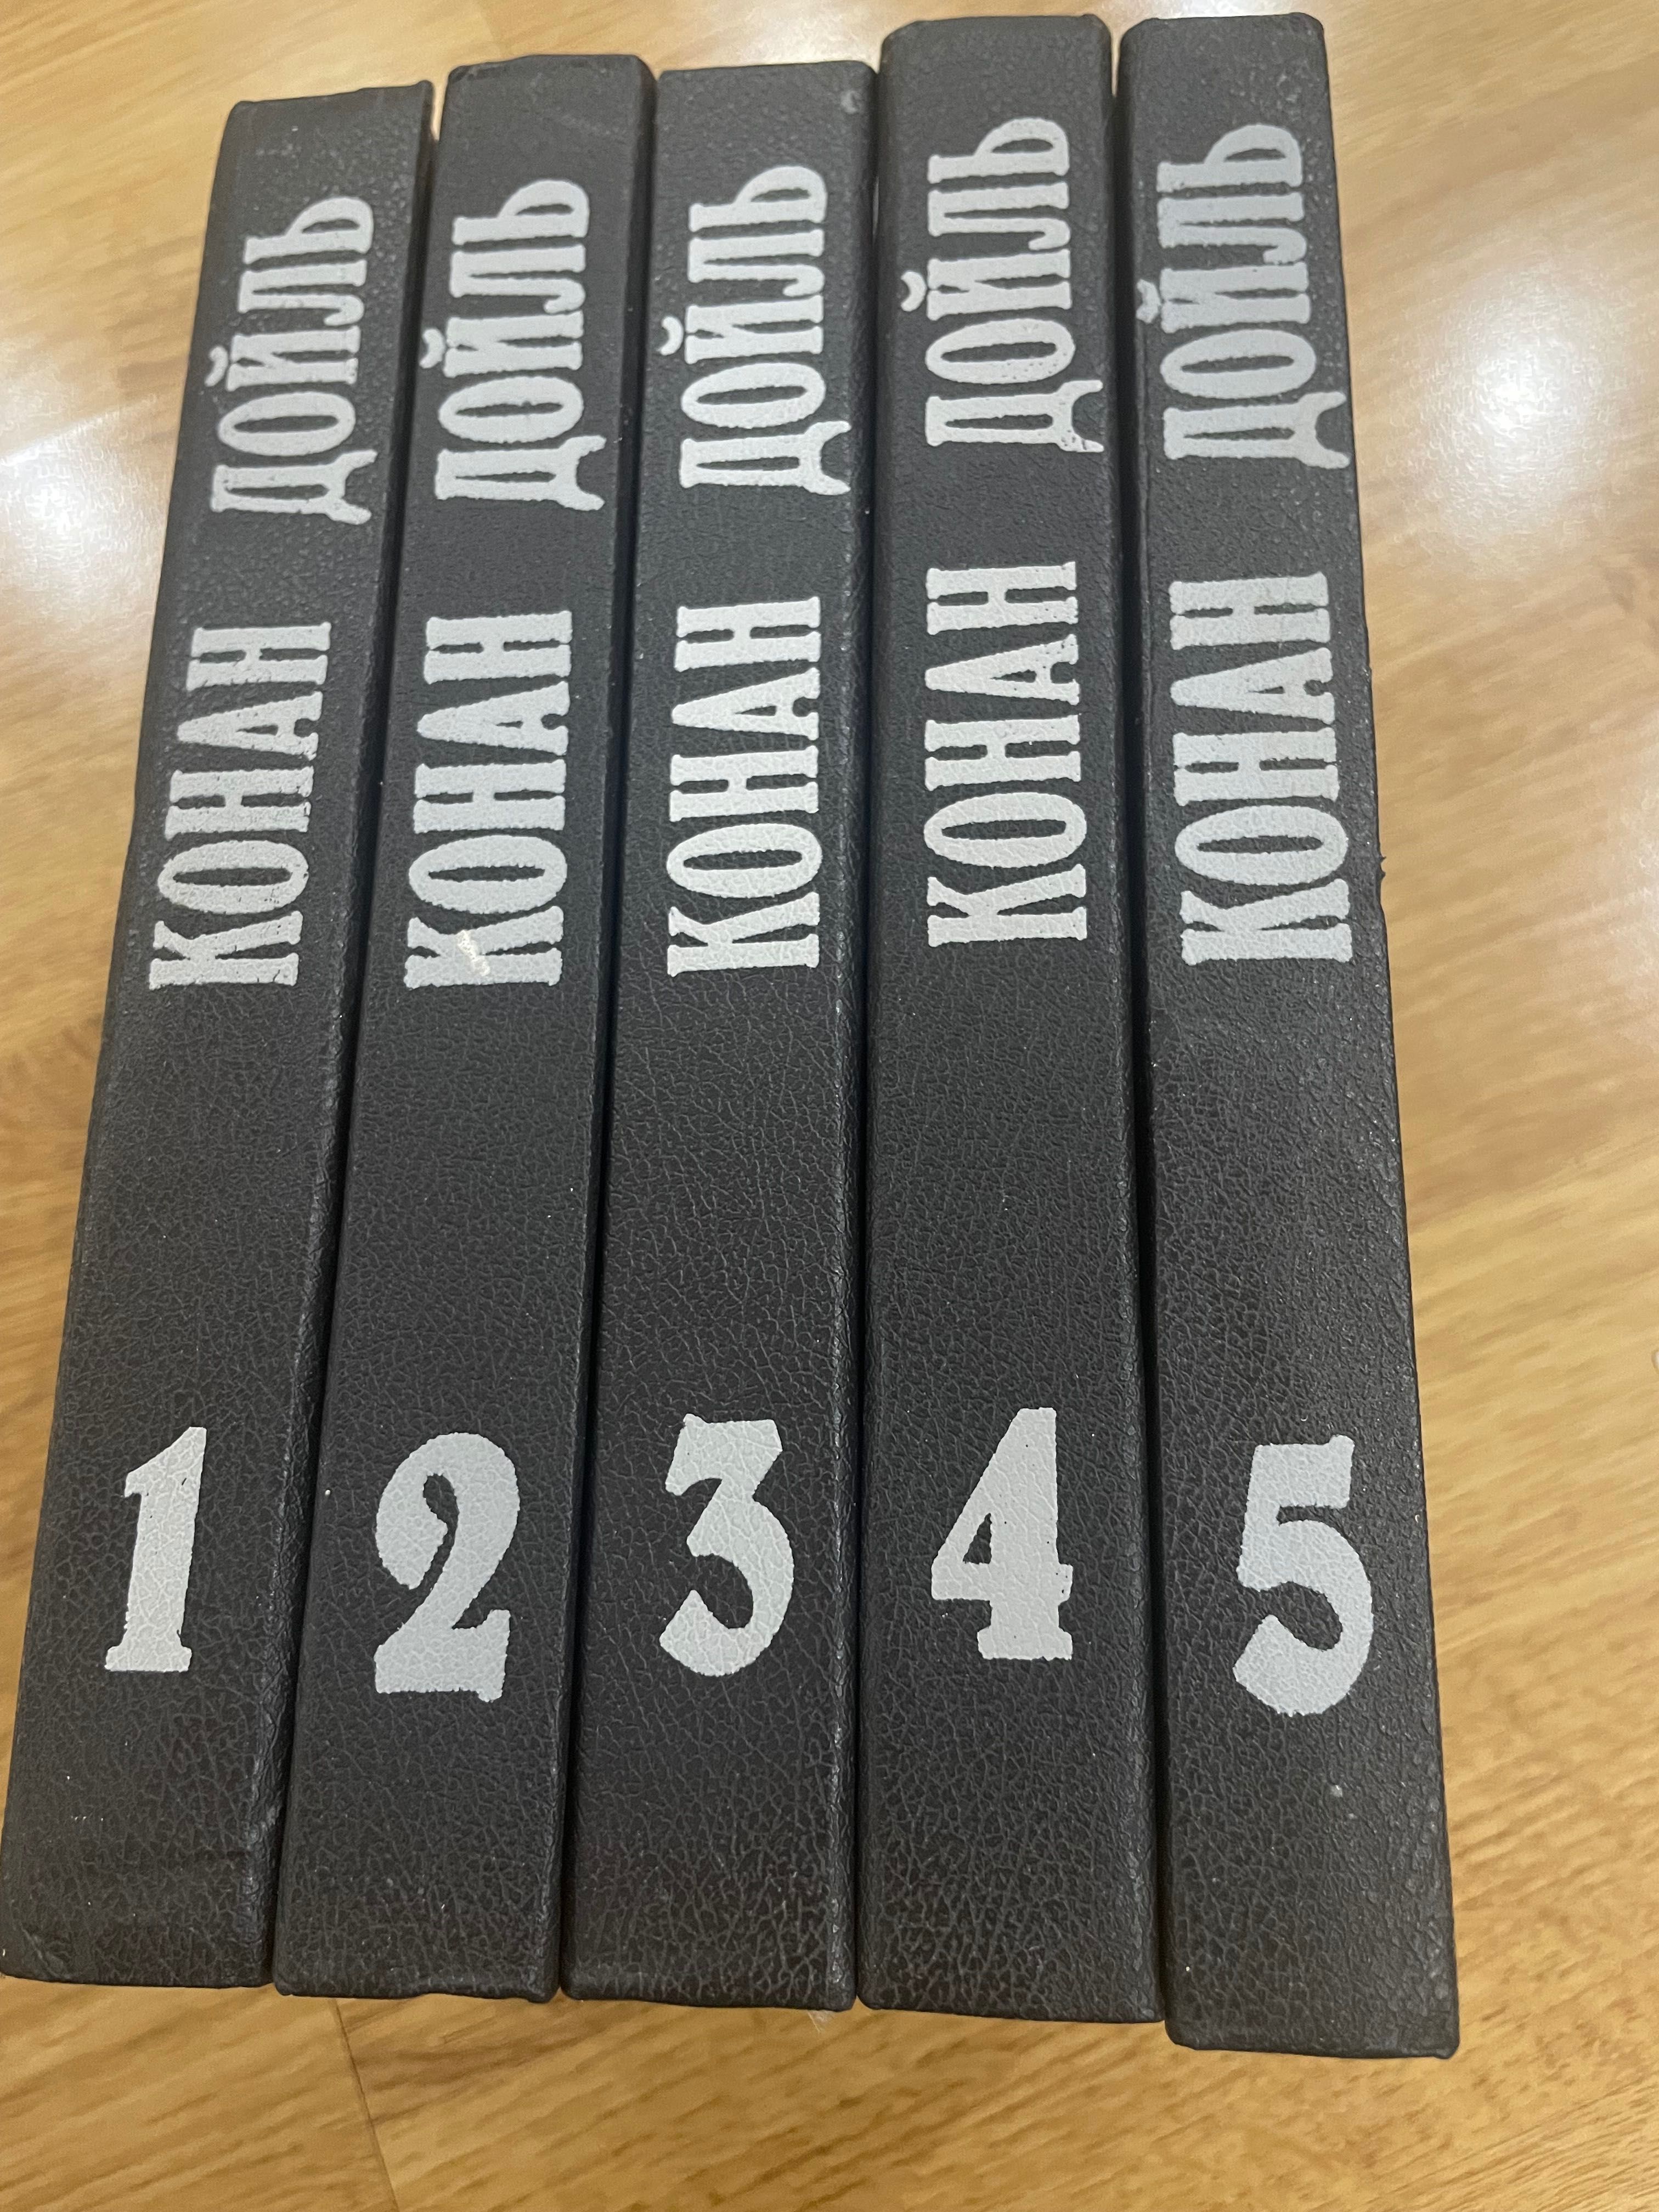 Книги Конан Дойль 5 томов